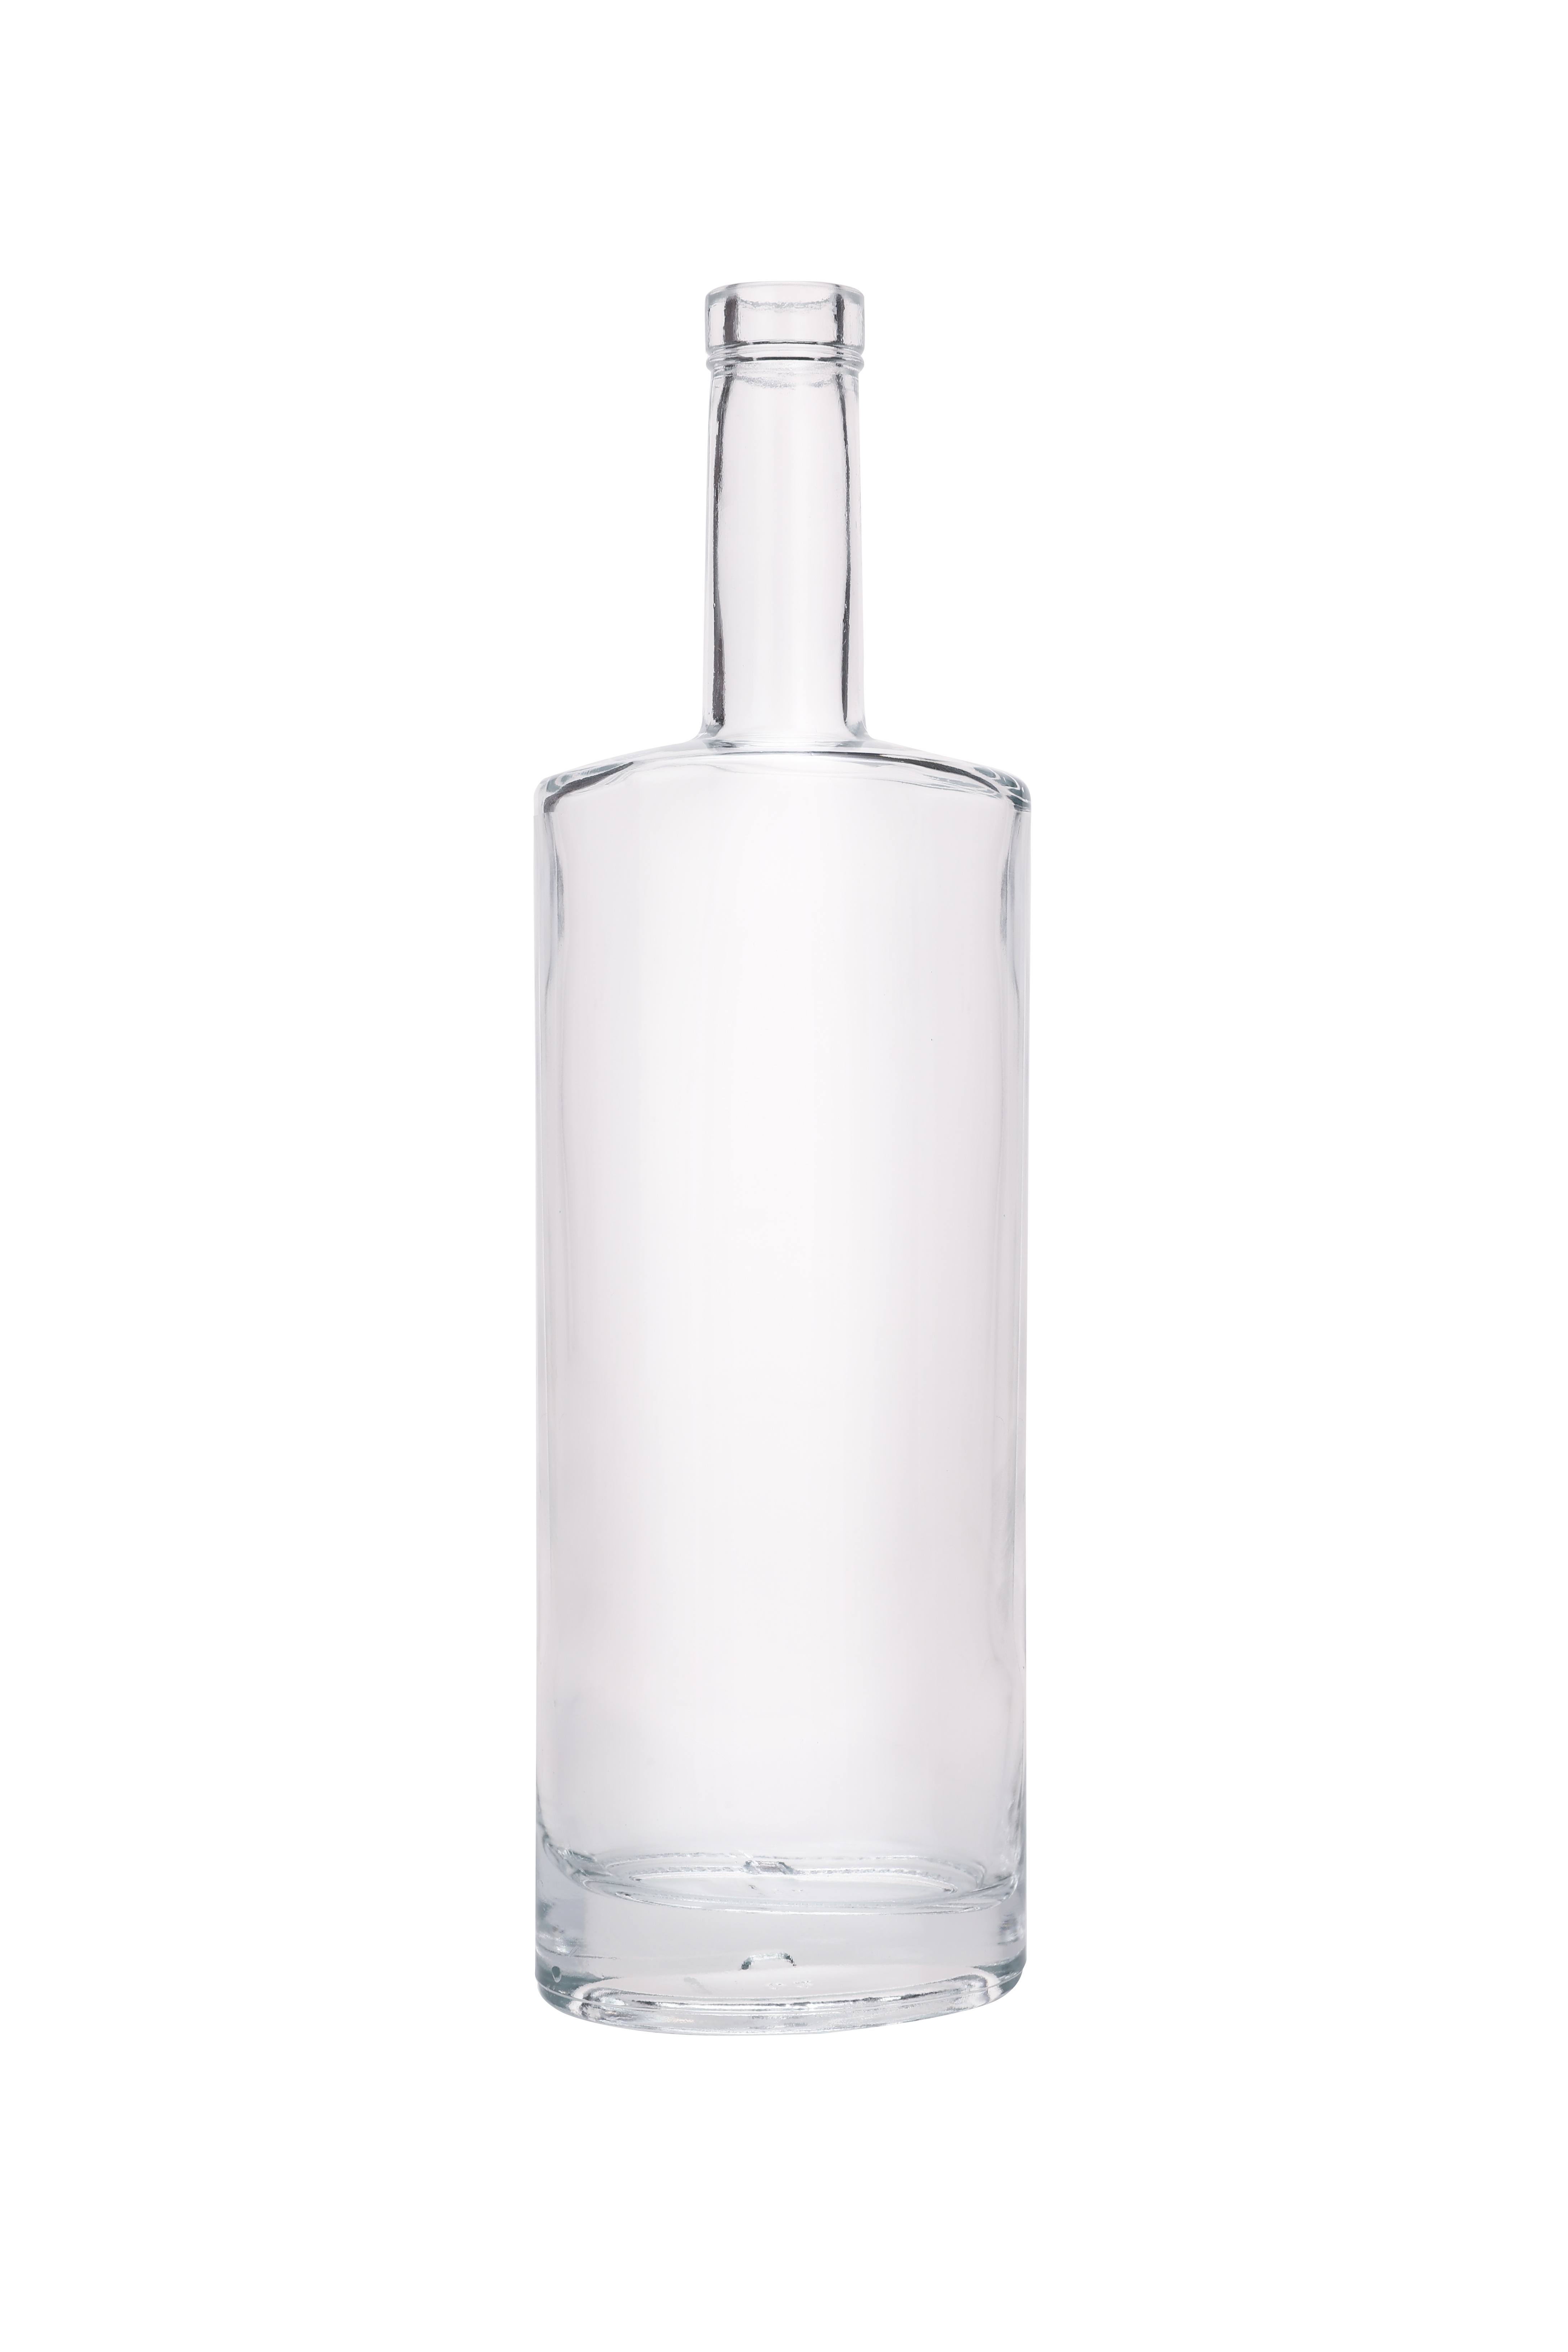 New Fancy Wholesale Exquisite Design Vodka Liquor Glass Bottle 750 Ml Clear Glass Bottle with Cork